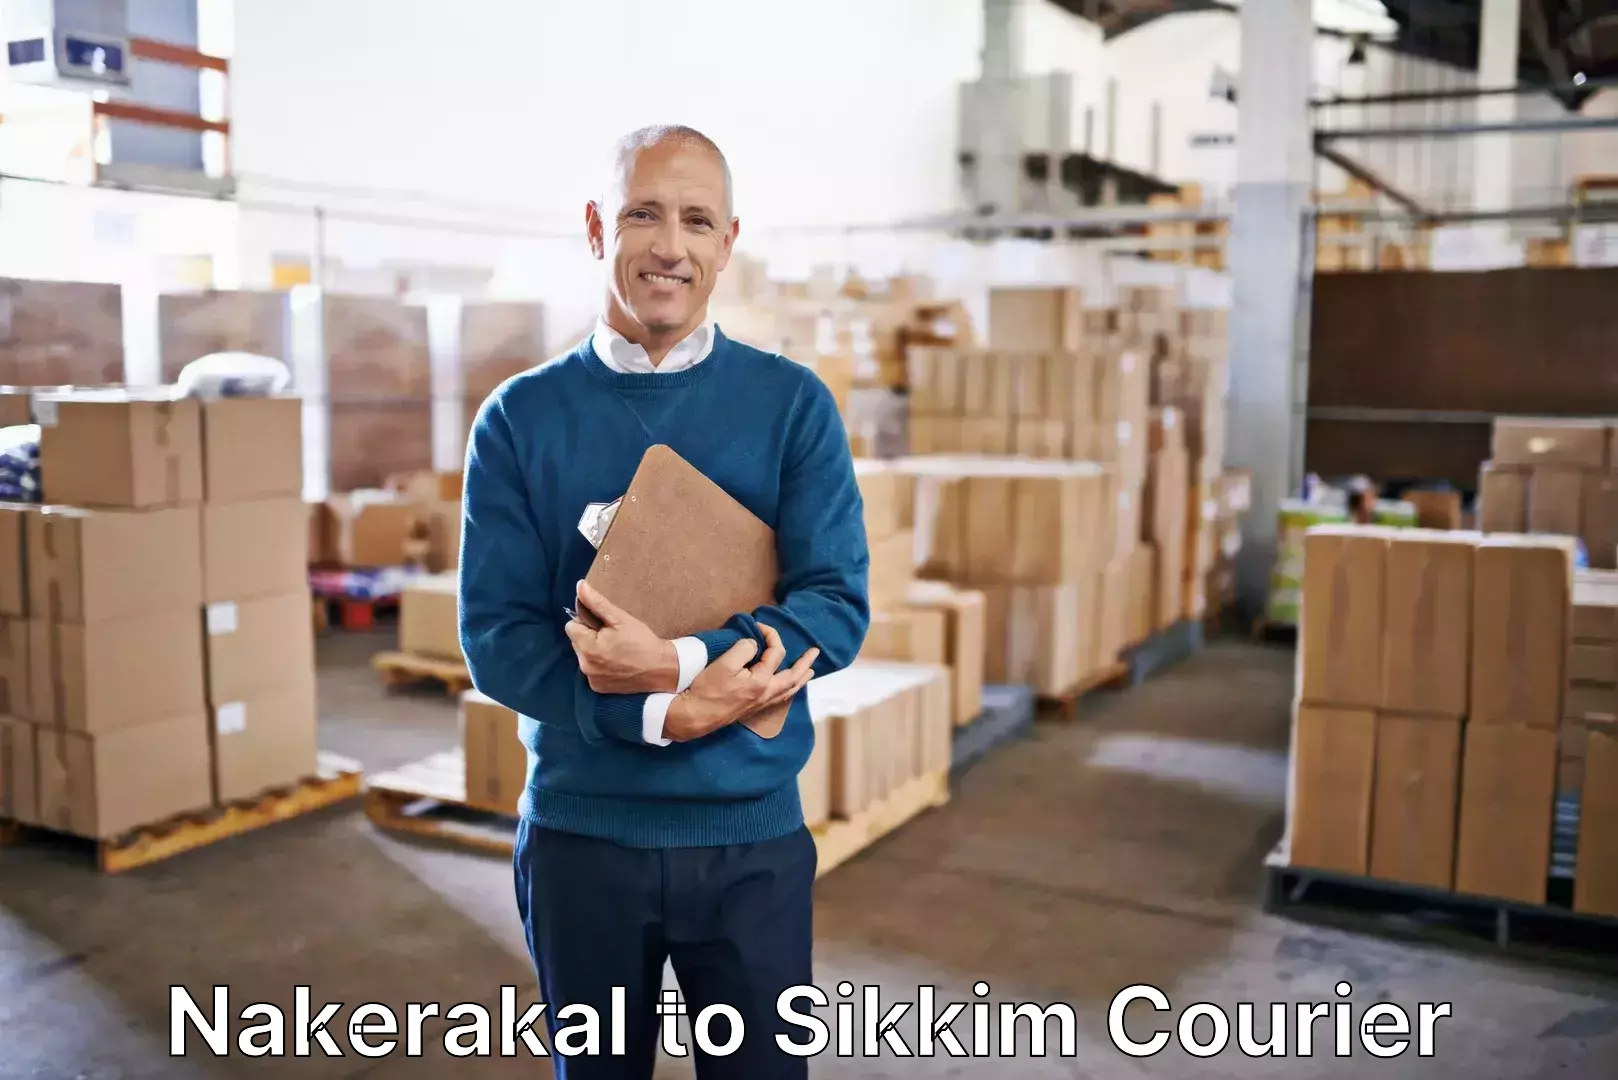 Luggage shipment tracking Nakerakal to Sikkim